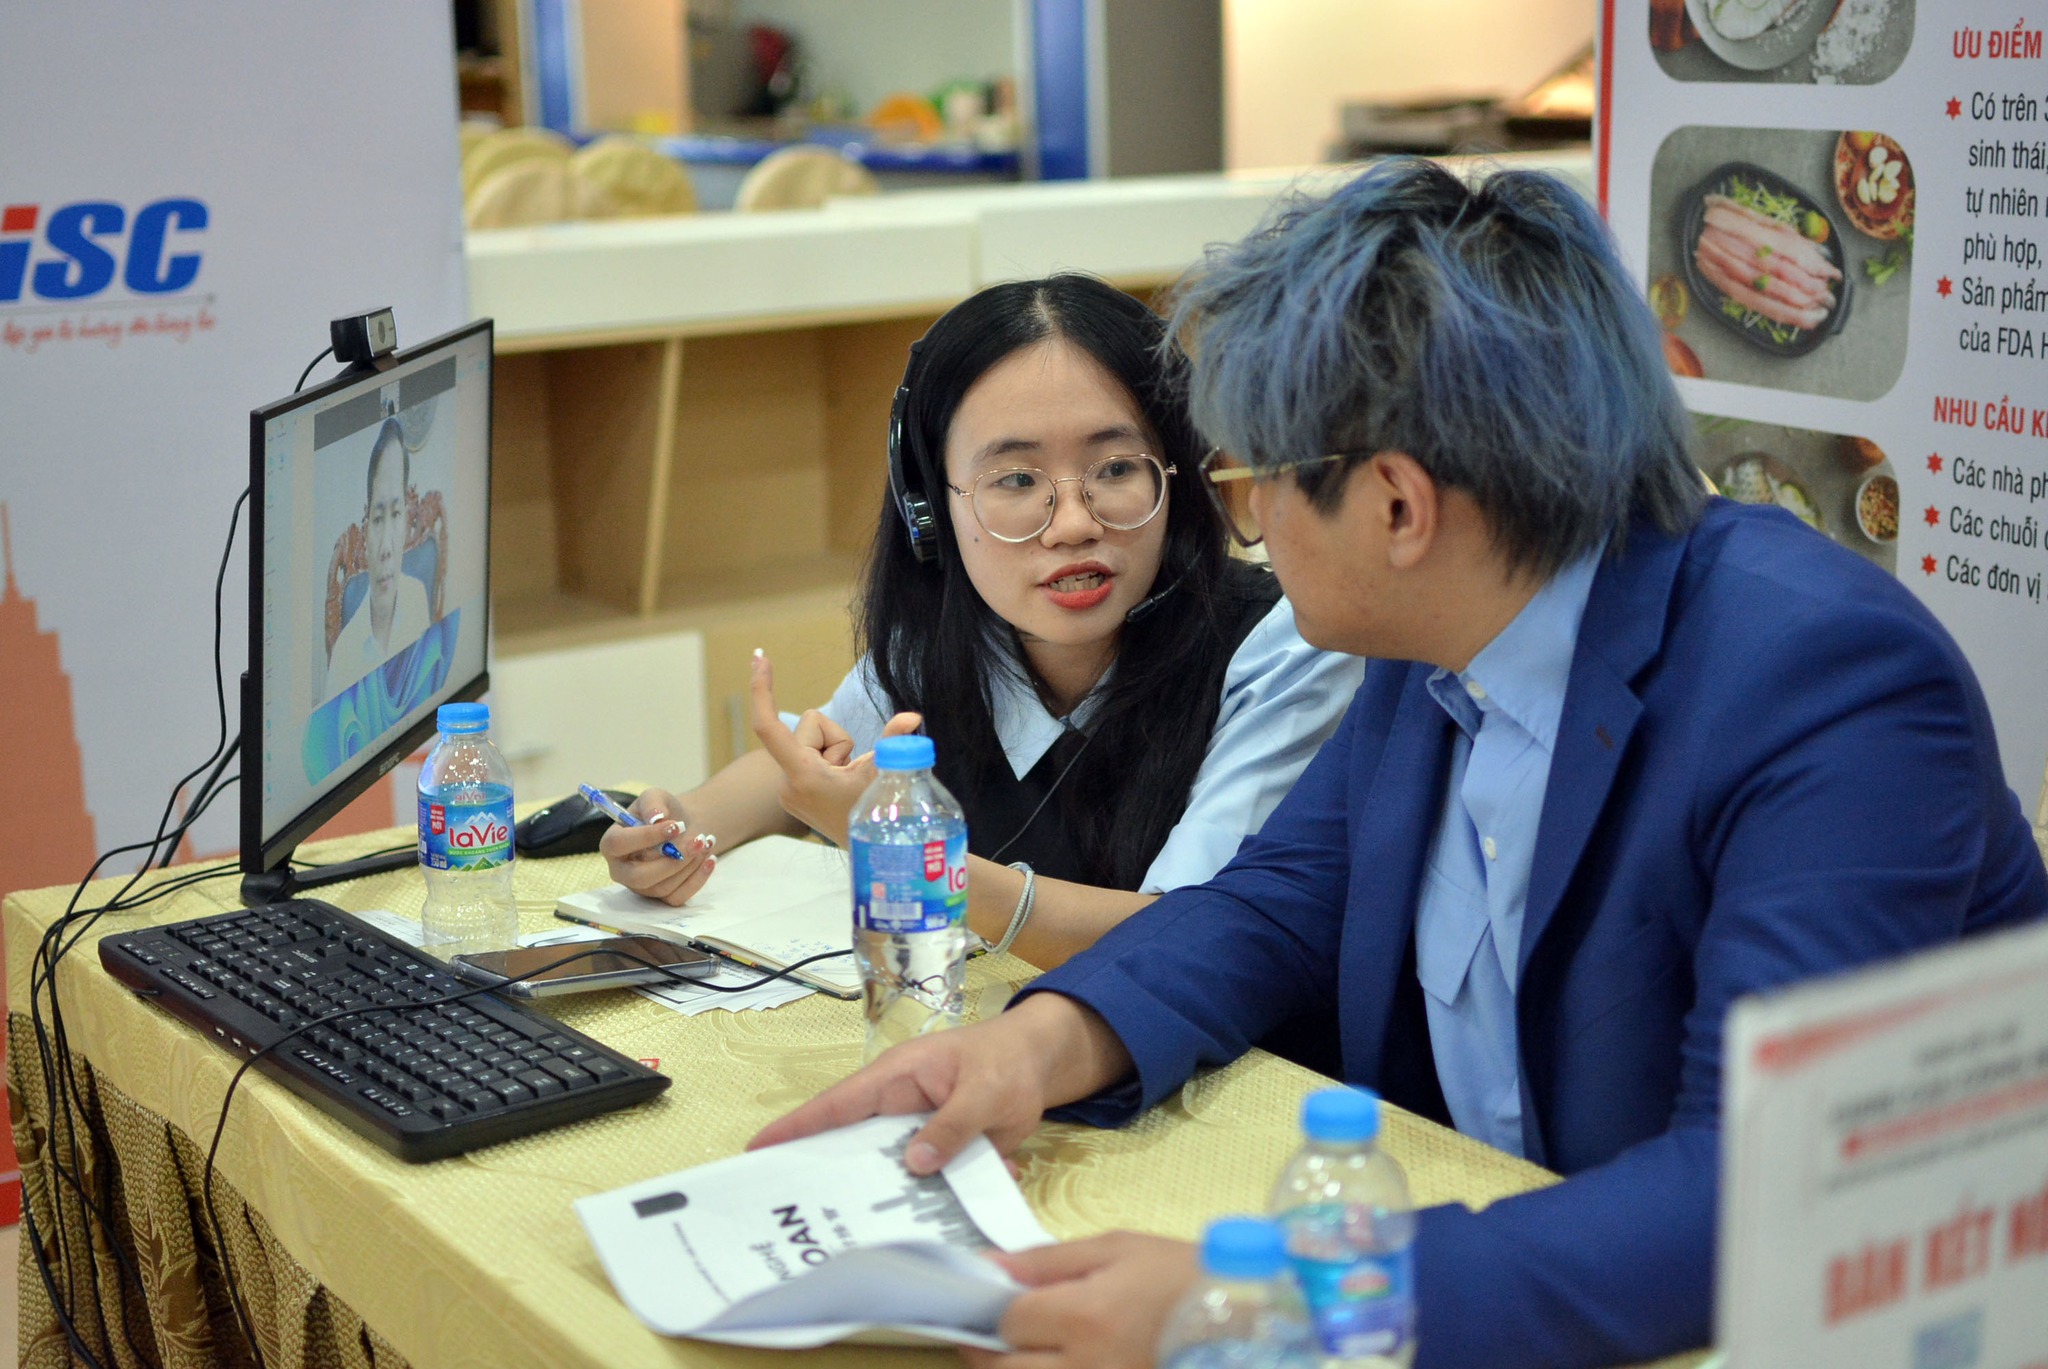 Khai mạc Phiên kết nối cung cầu công nghệ giữa các tổ chức, doanh nghiệp Việt Nam và Đài Loan (Trung Quốc)